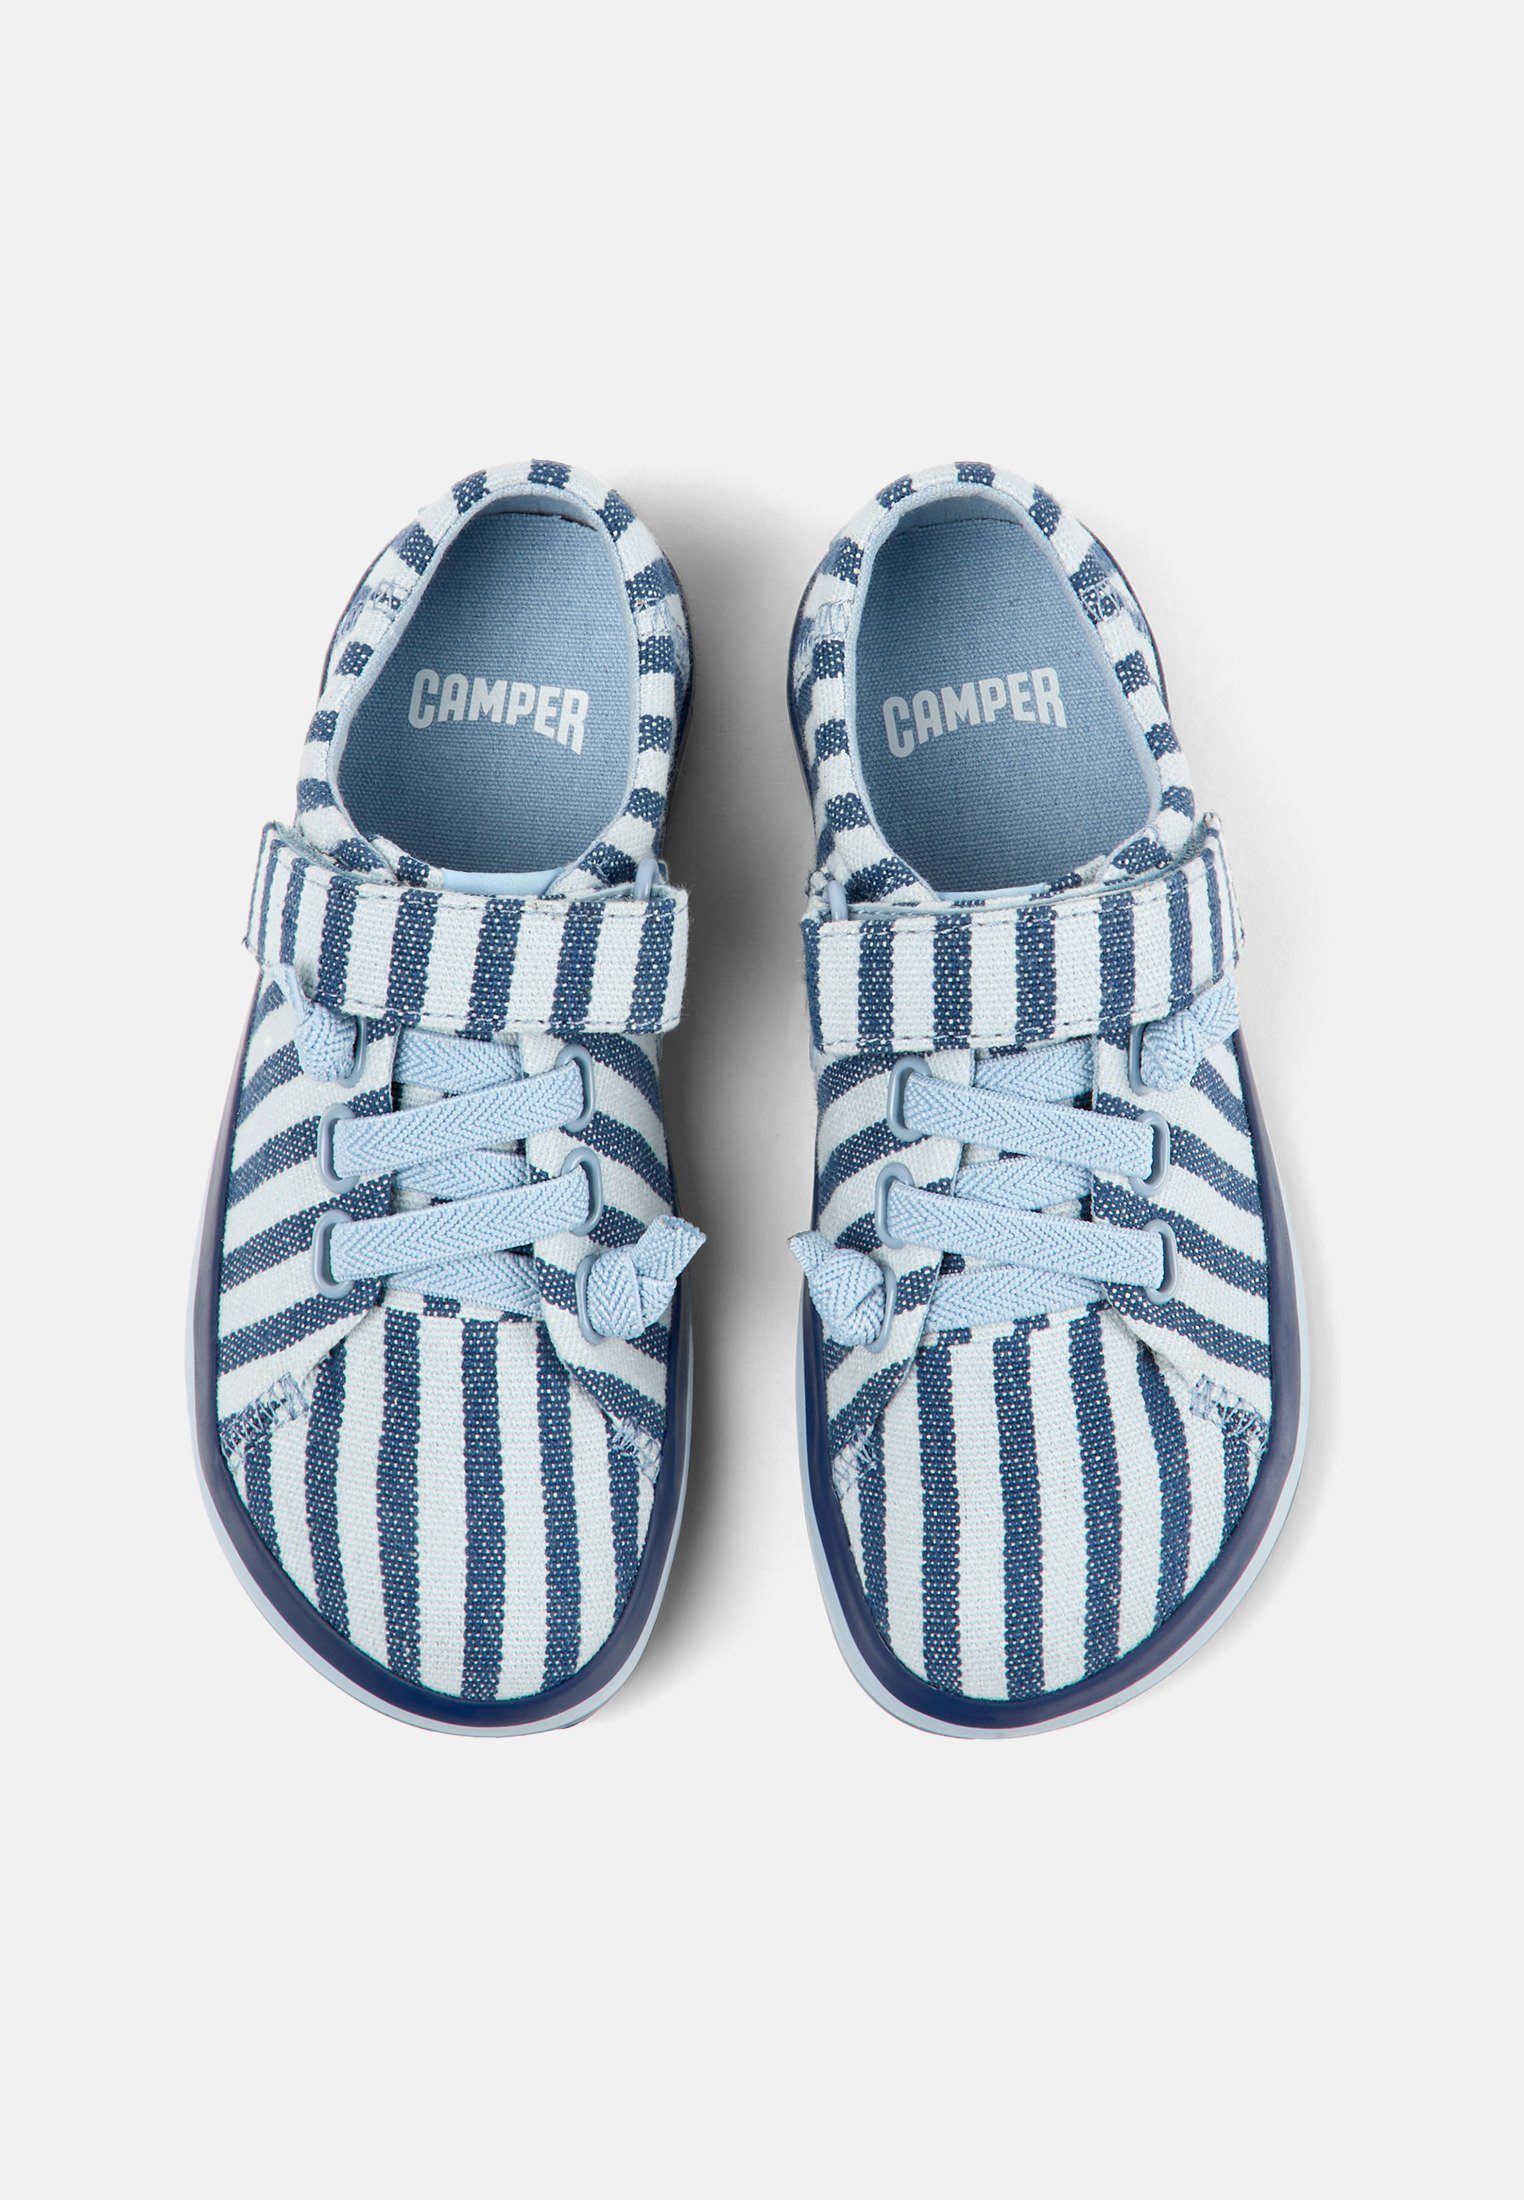 / Blau Weiß Camper Sneaker PEU